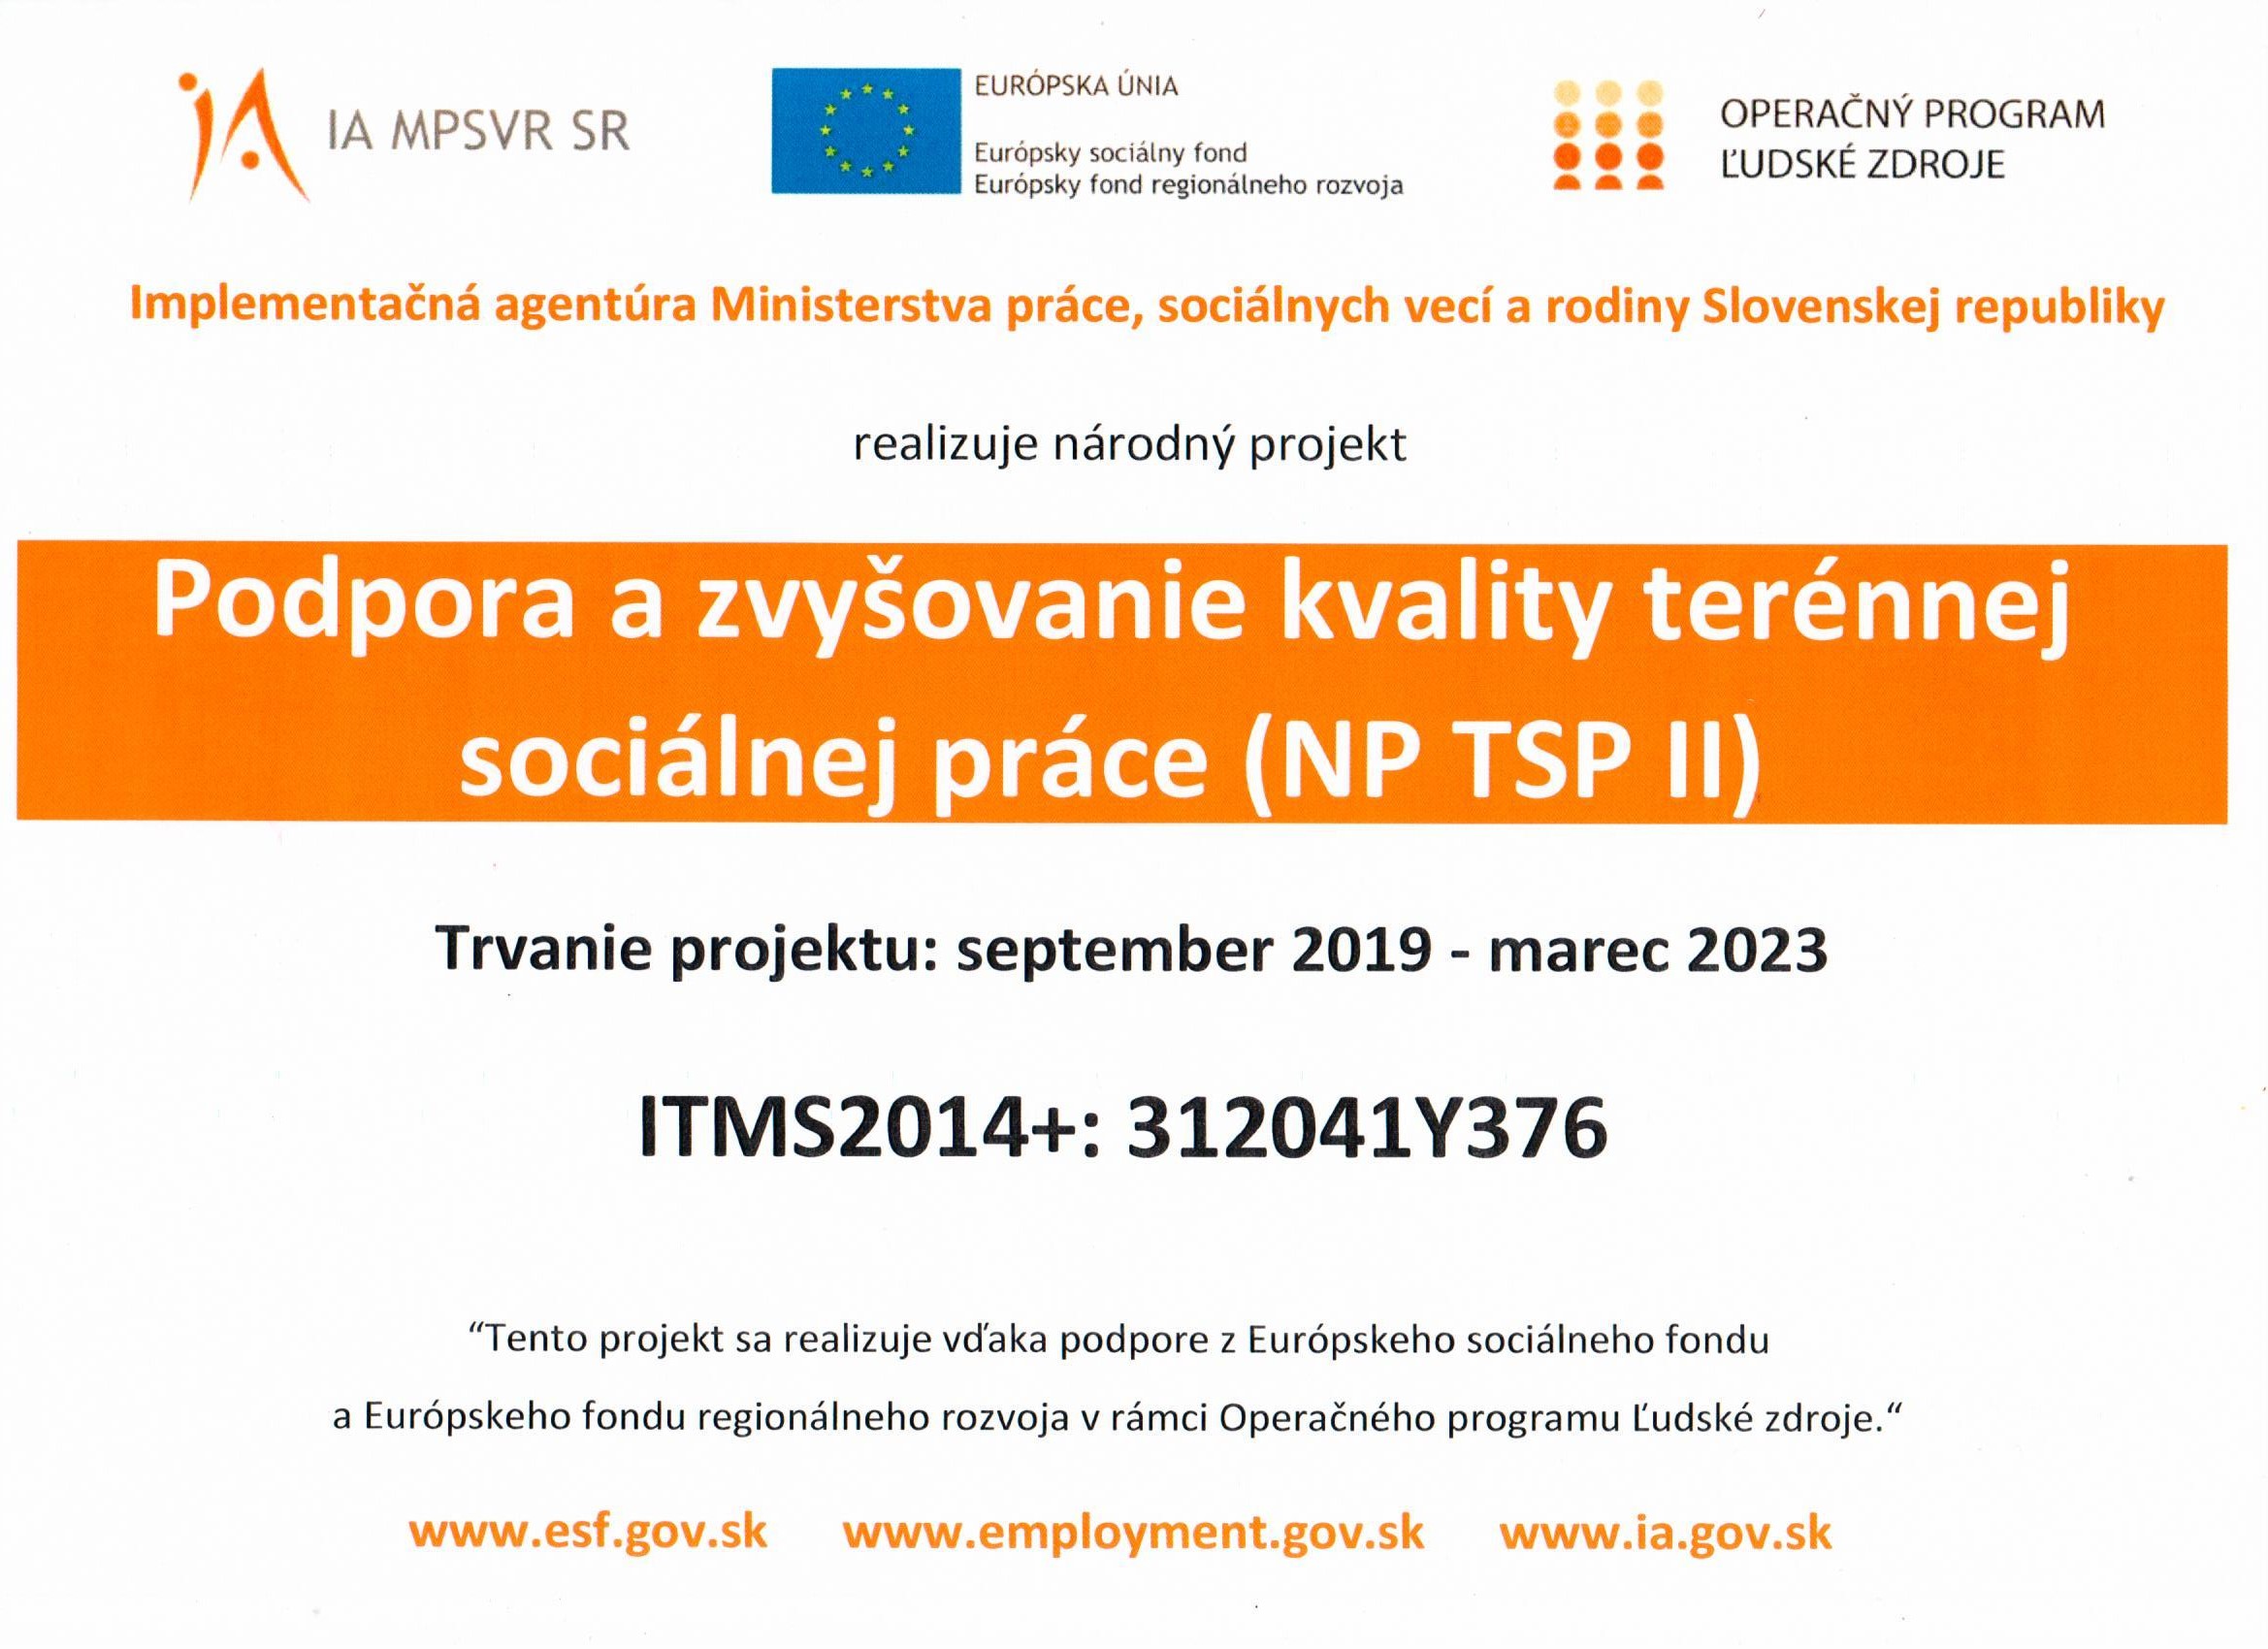 Podpora a zvyšovanie kvality terénnej sociálnej práce  NP TSP II